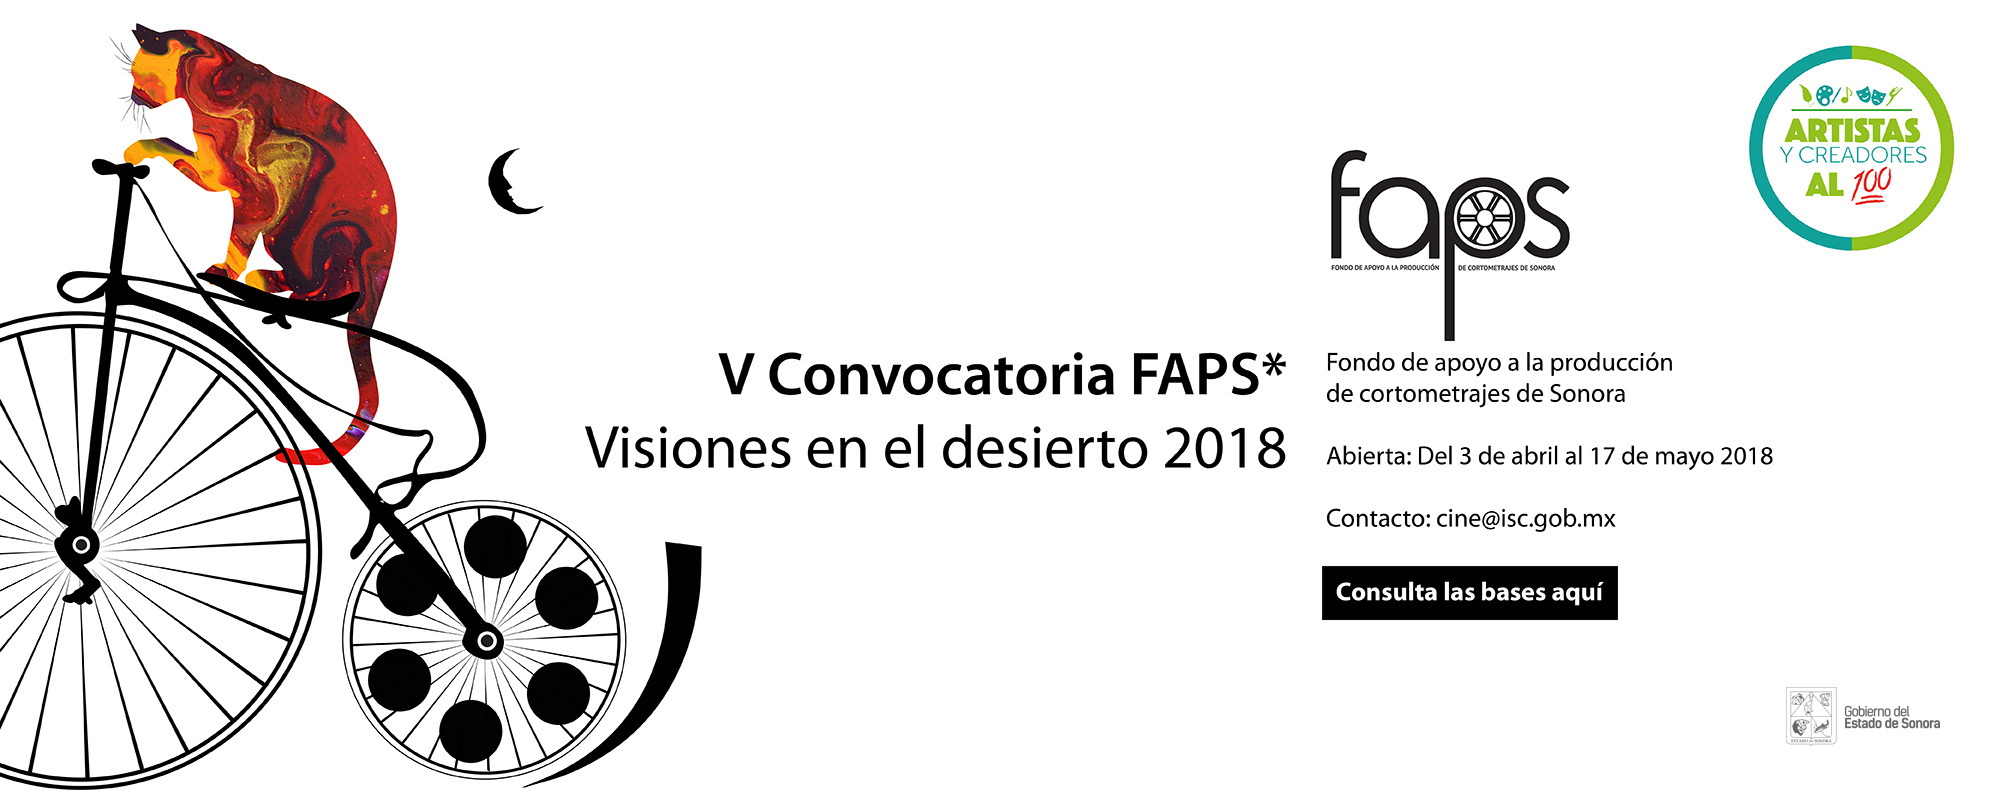 V Convocatoria FAPS 2018